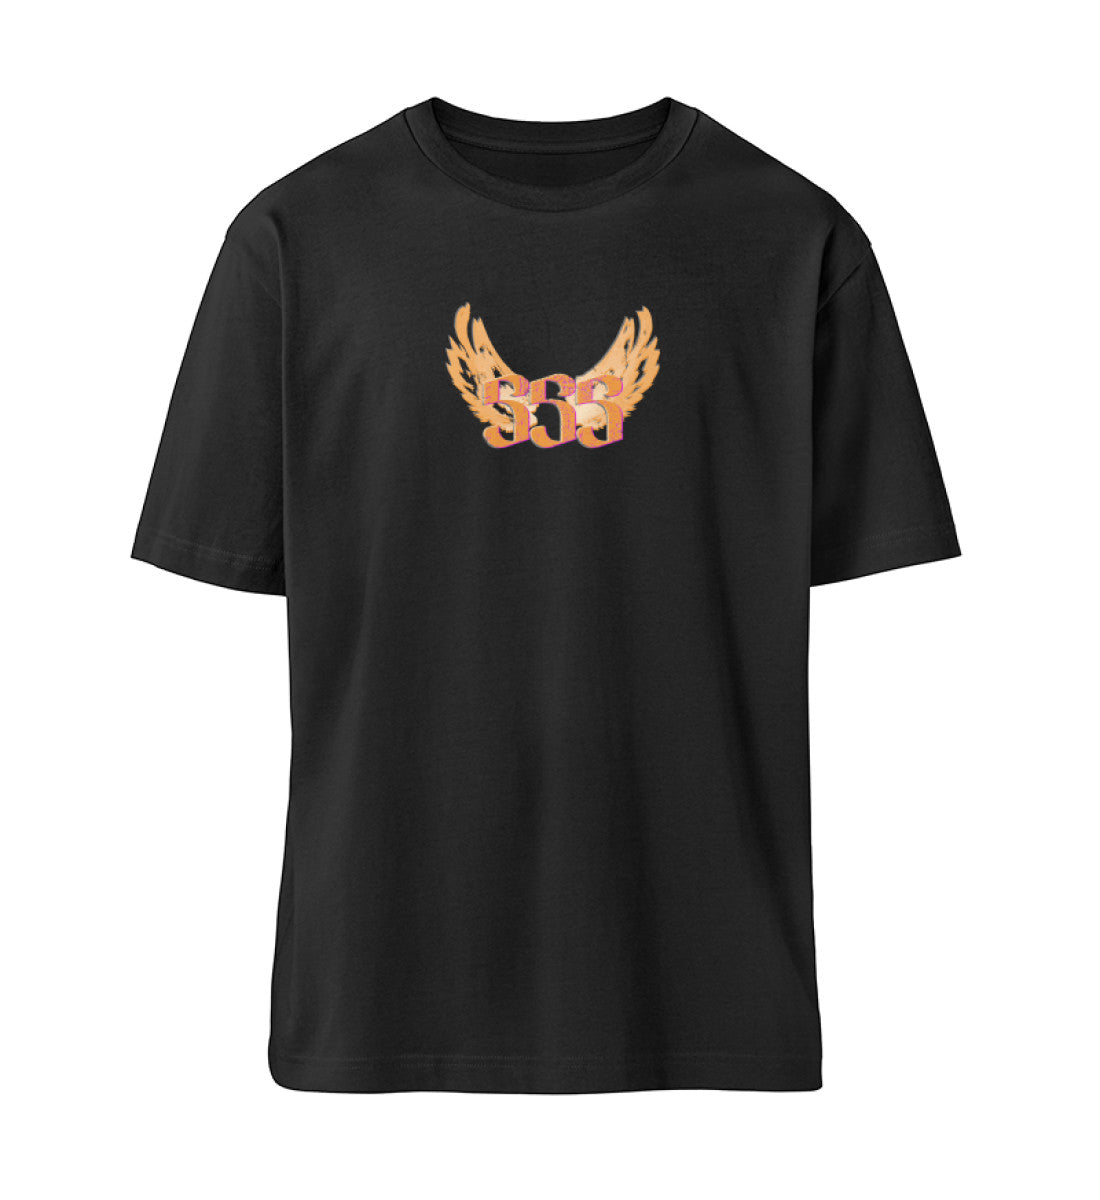 Schwarzes T-Shirt Unisex Relaxed Fit für Frauen und Männer bedruckt mit dem Design der Roger Rockawoo Kollektion Engelszahl 555